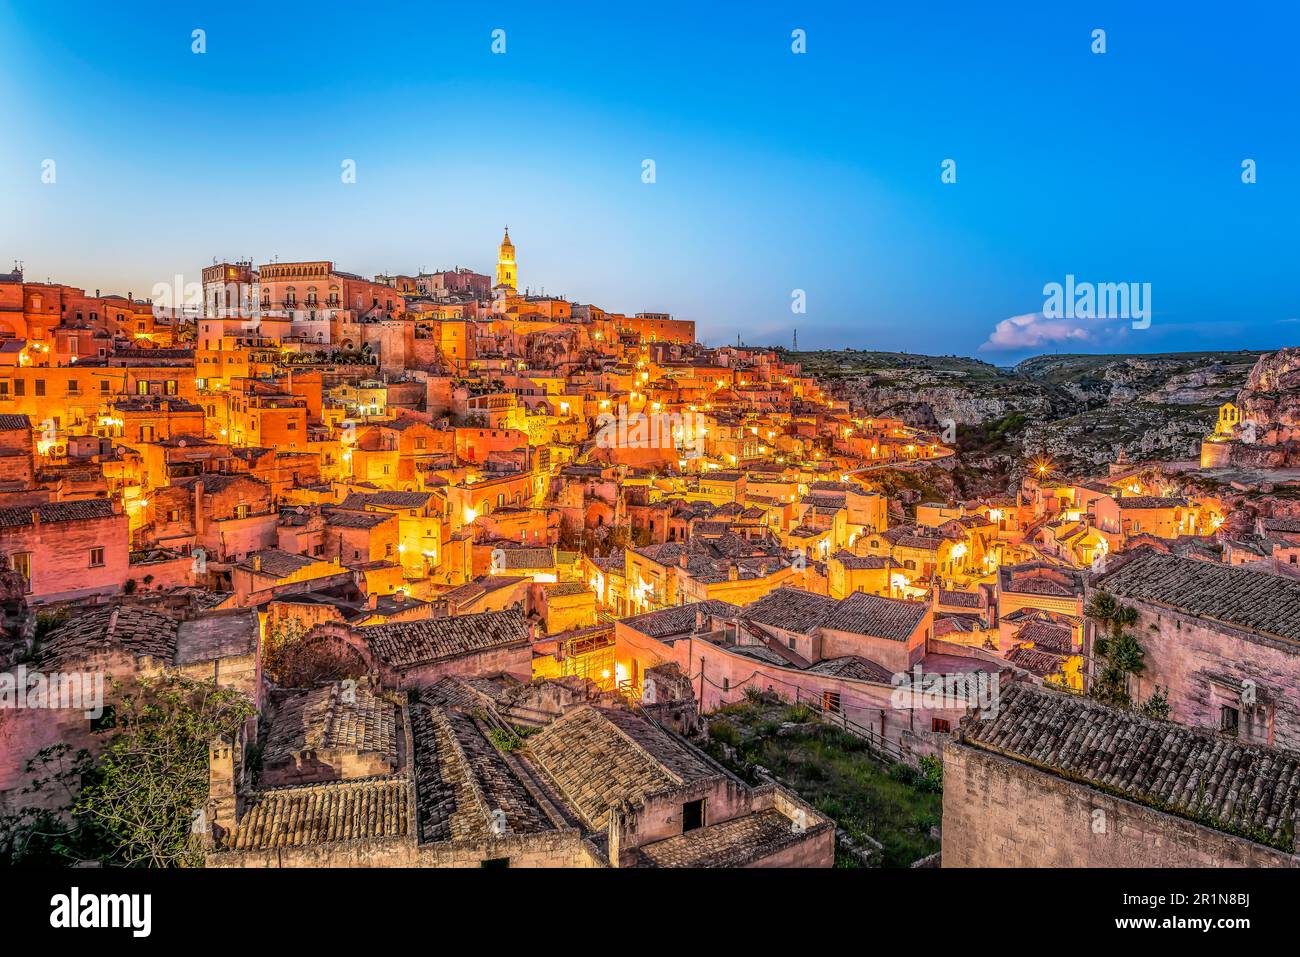 Vue panoramique de la ville de Matera à Apulia en Italie de nuit Banque D'Images